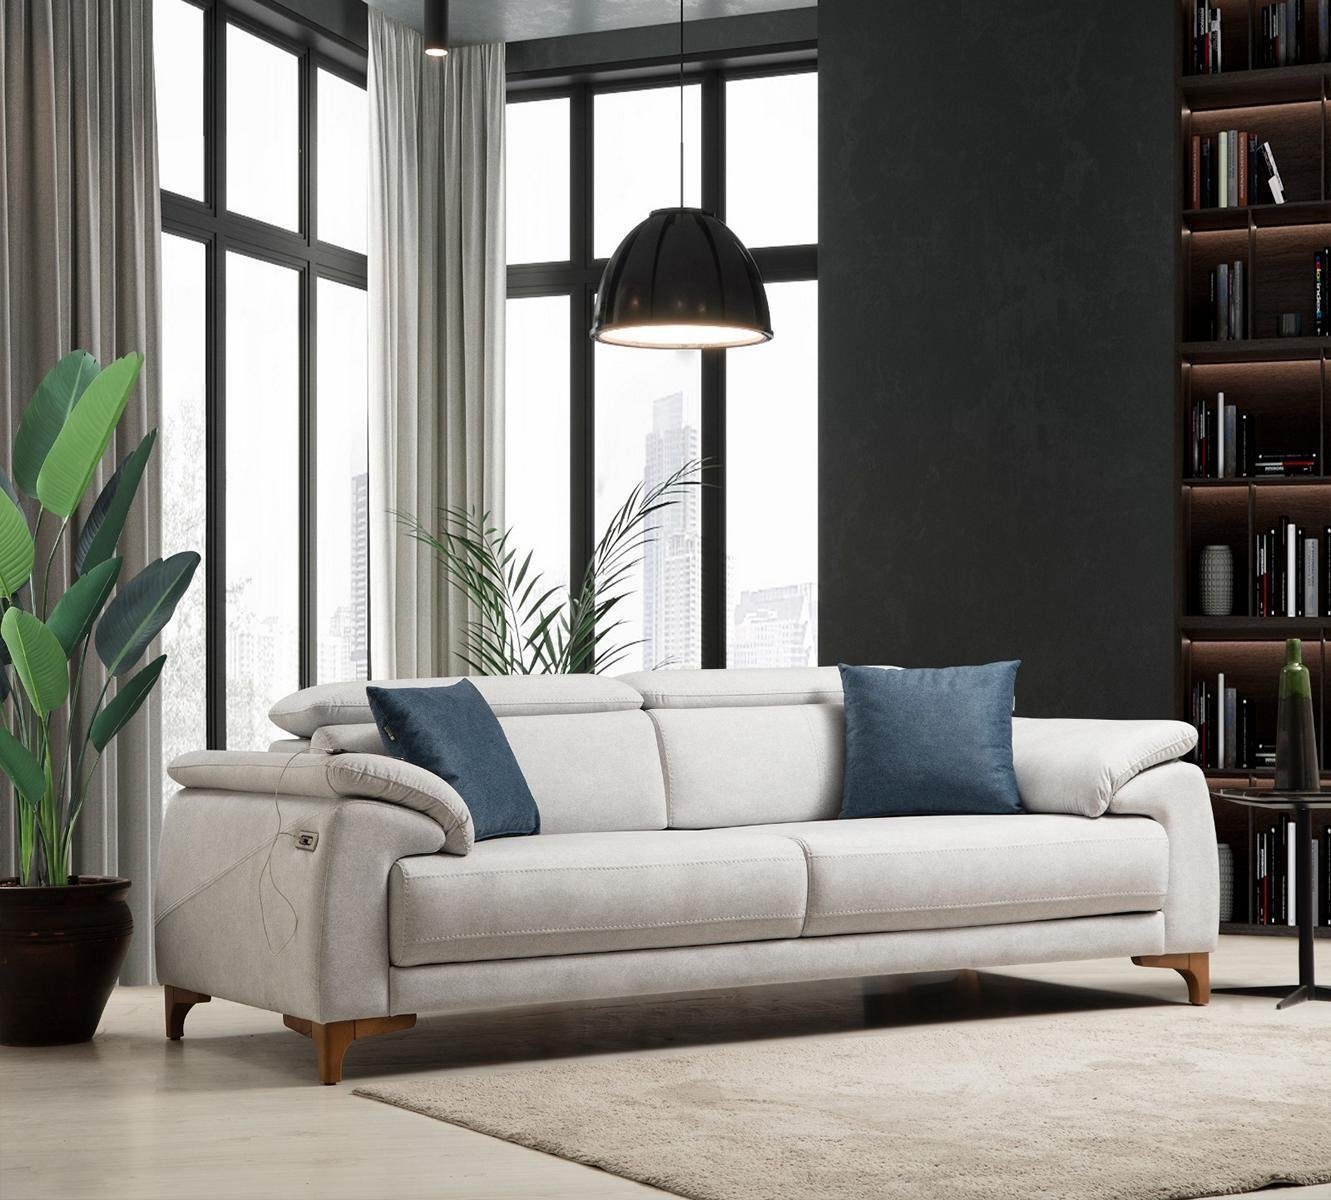 JVmoebel Teile, 1 Polstersofa Wohnzimmer Design Modern in Möbel Neu, Made 3-Sitzer Sofa Luxus Europa Grau